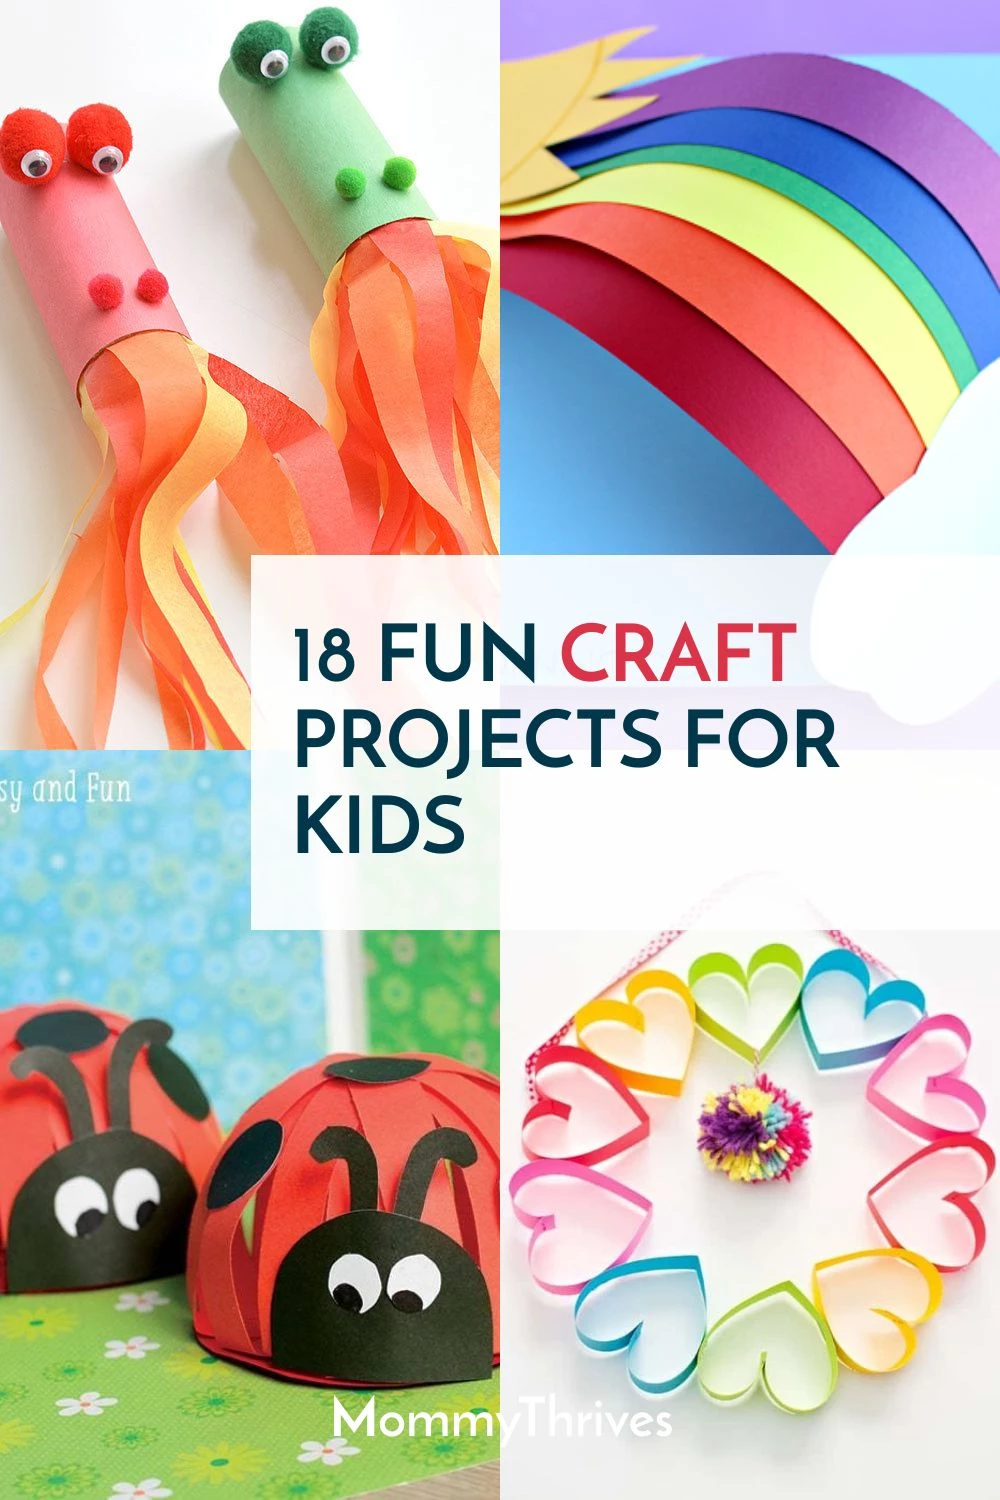 Paper Sun, Kids' Crafts, Fun Craft Ideas